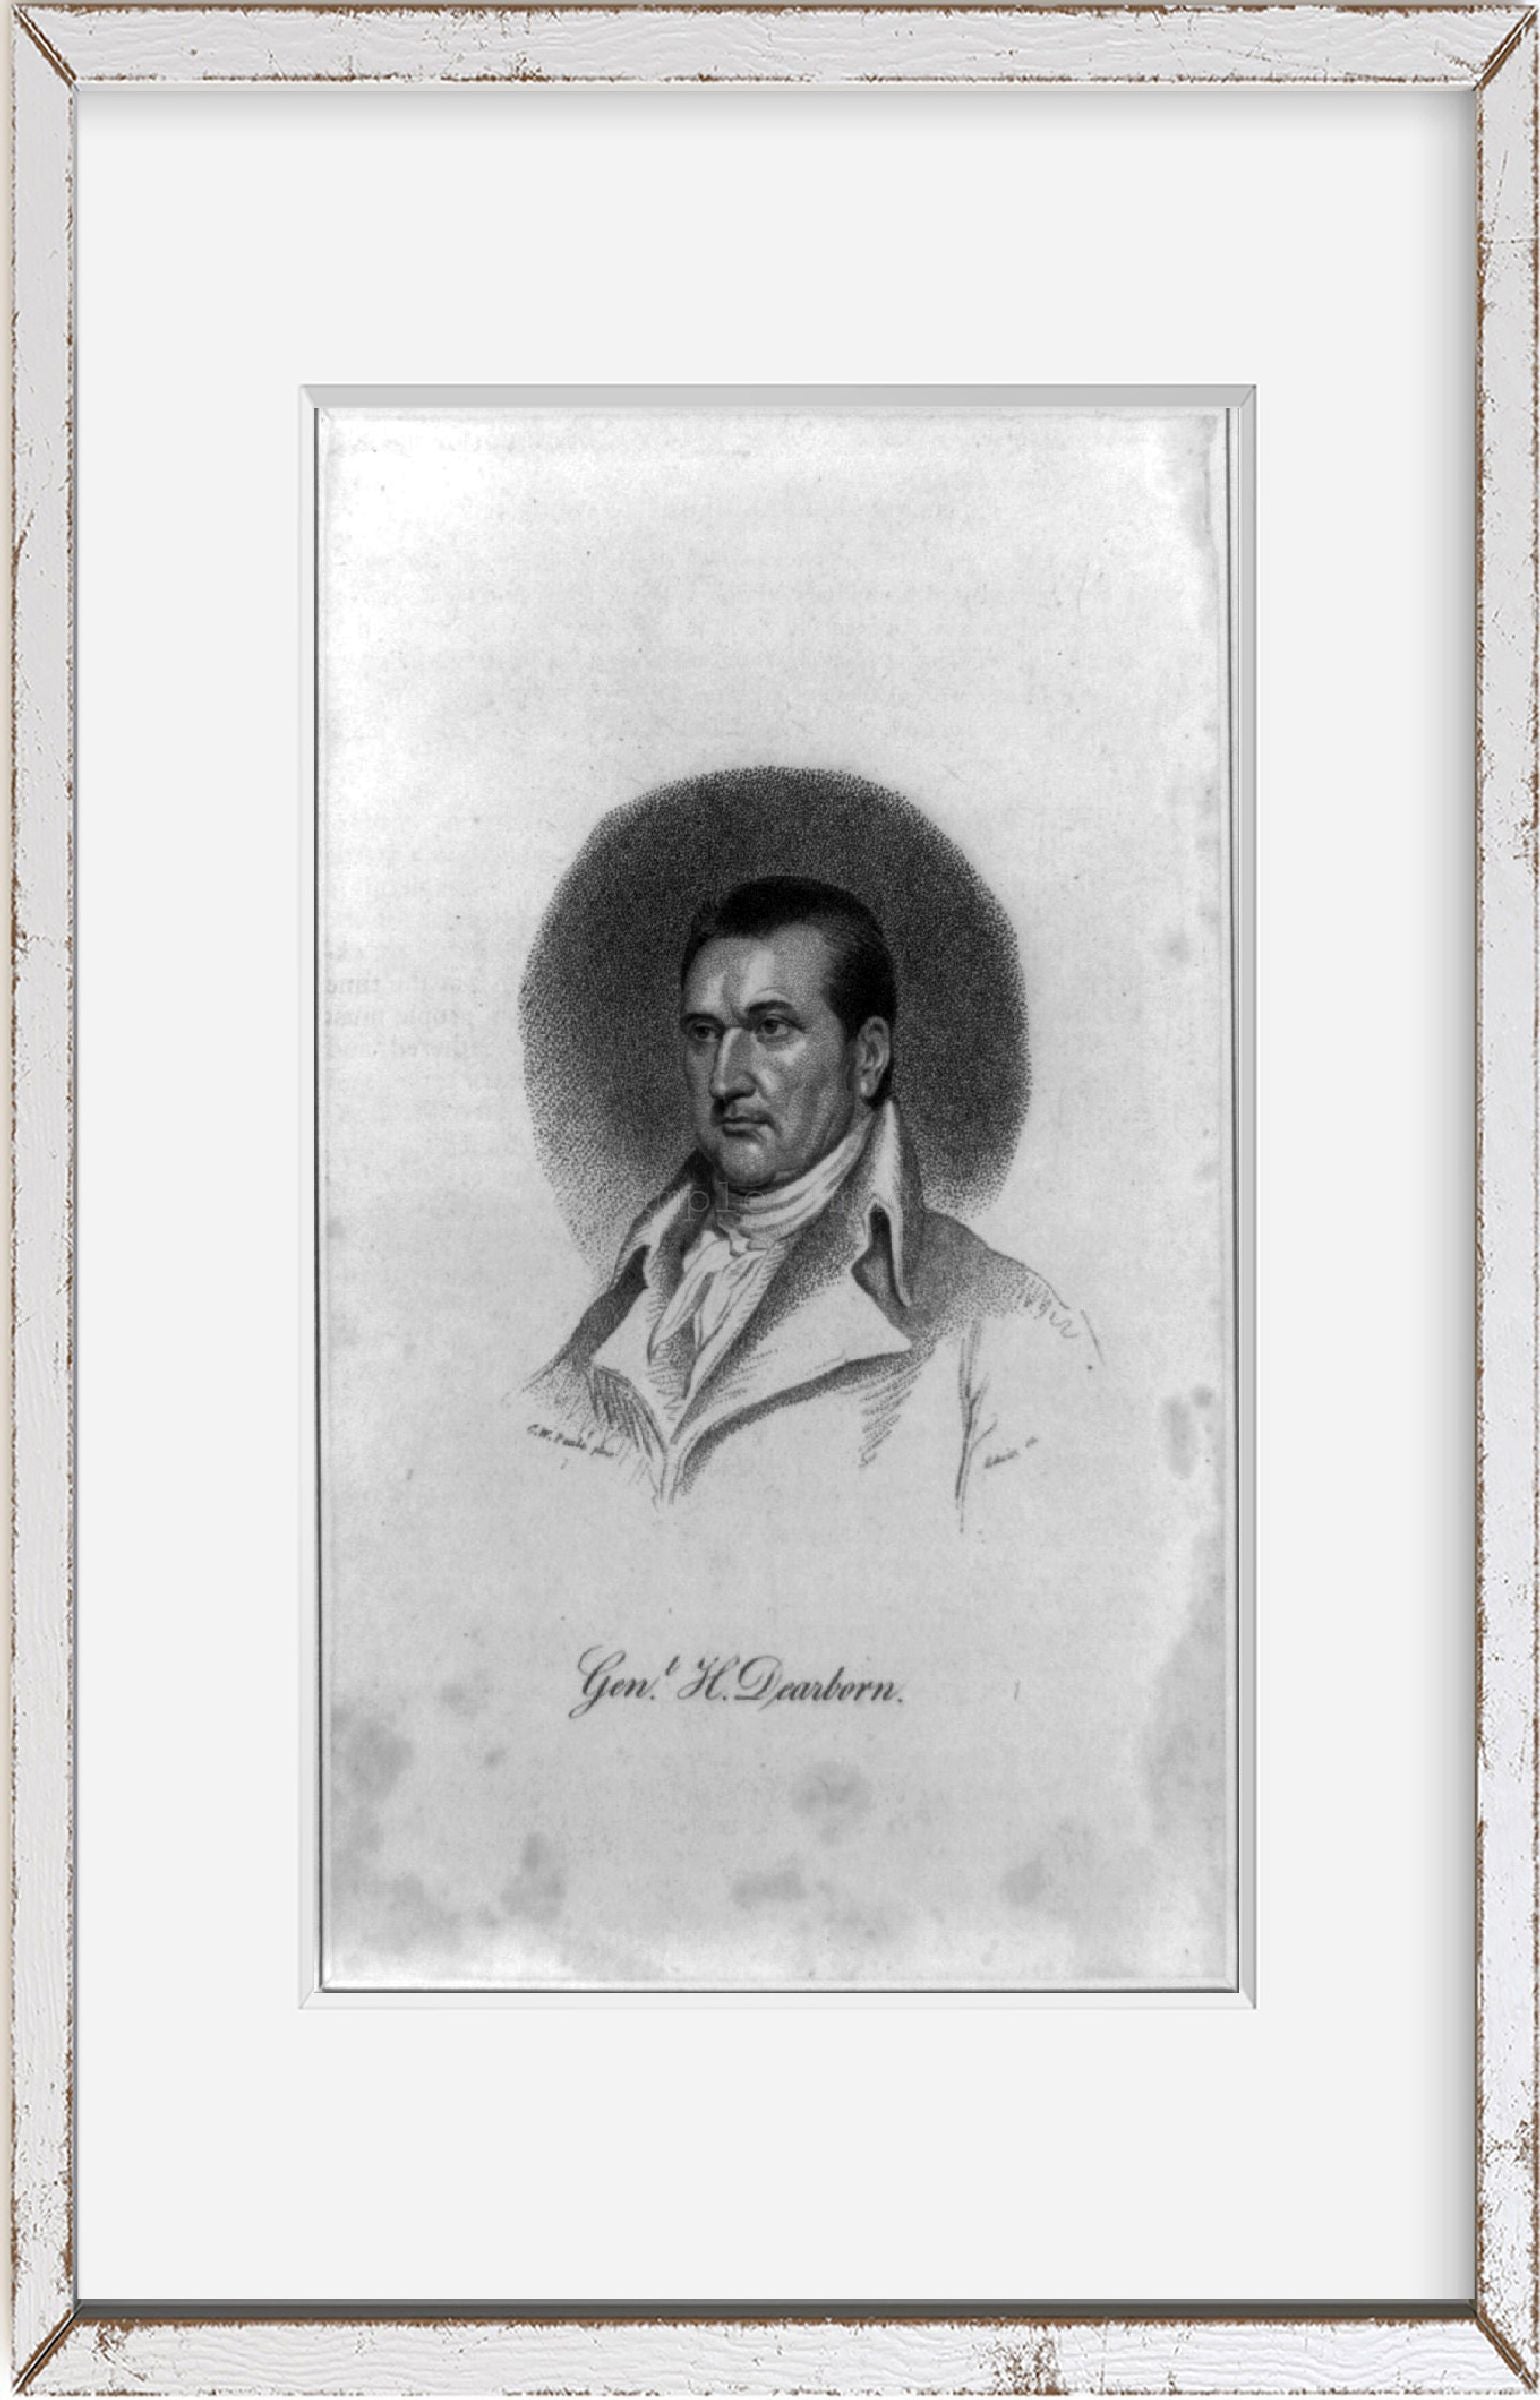 1813 Photo Genl. H. Dearborn / C.W. Peale pinx. ; Edwin sc. Print shows Henry De